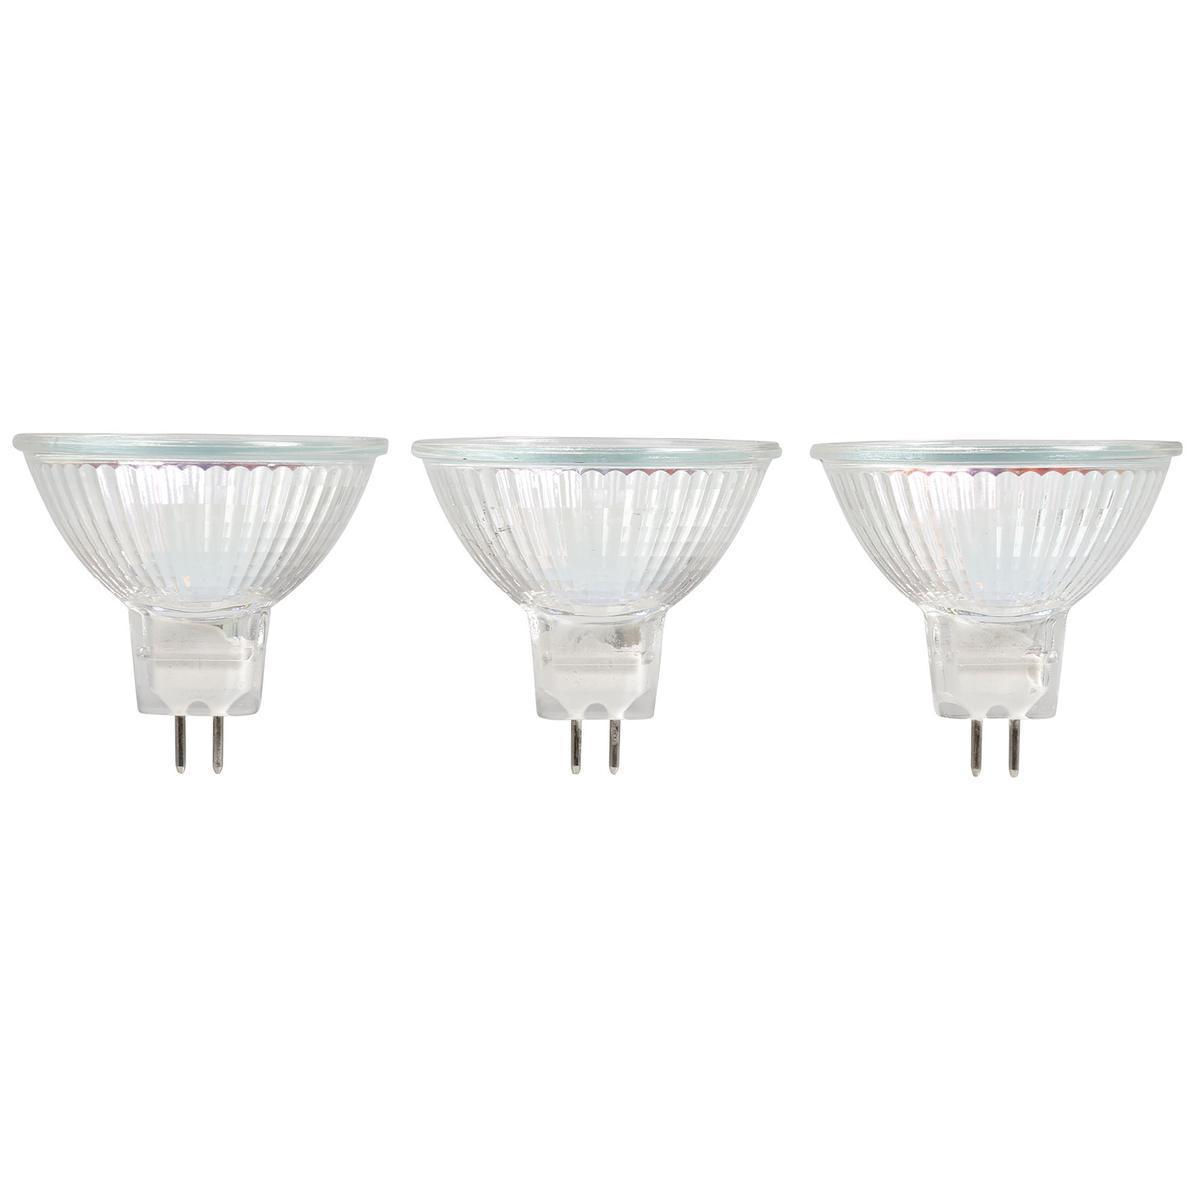 3 ampoules halogènes MR16 - 12 x 5 x 14 cm - Transparent